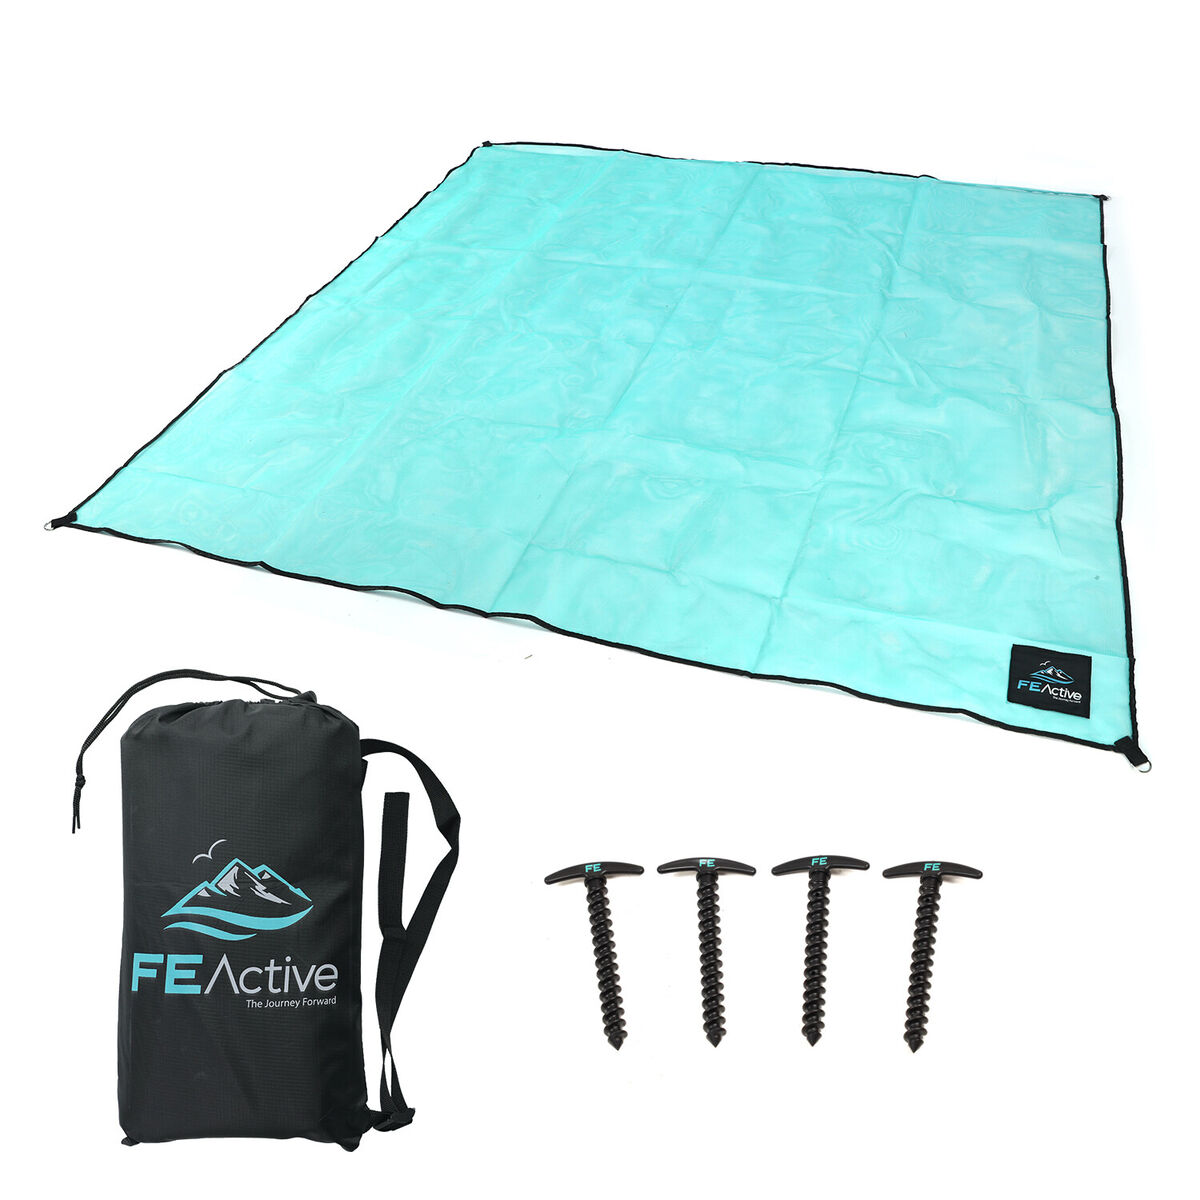 FE Active plážová deka, 200 x 200 cm  - zvìtšit obrázek